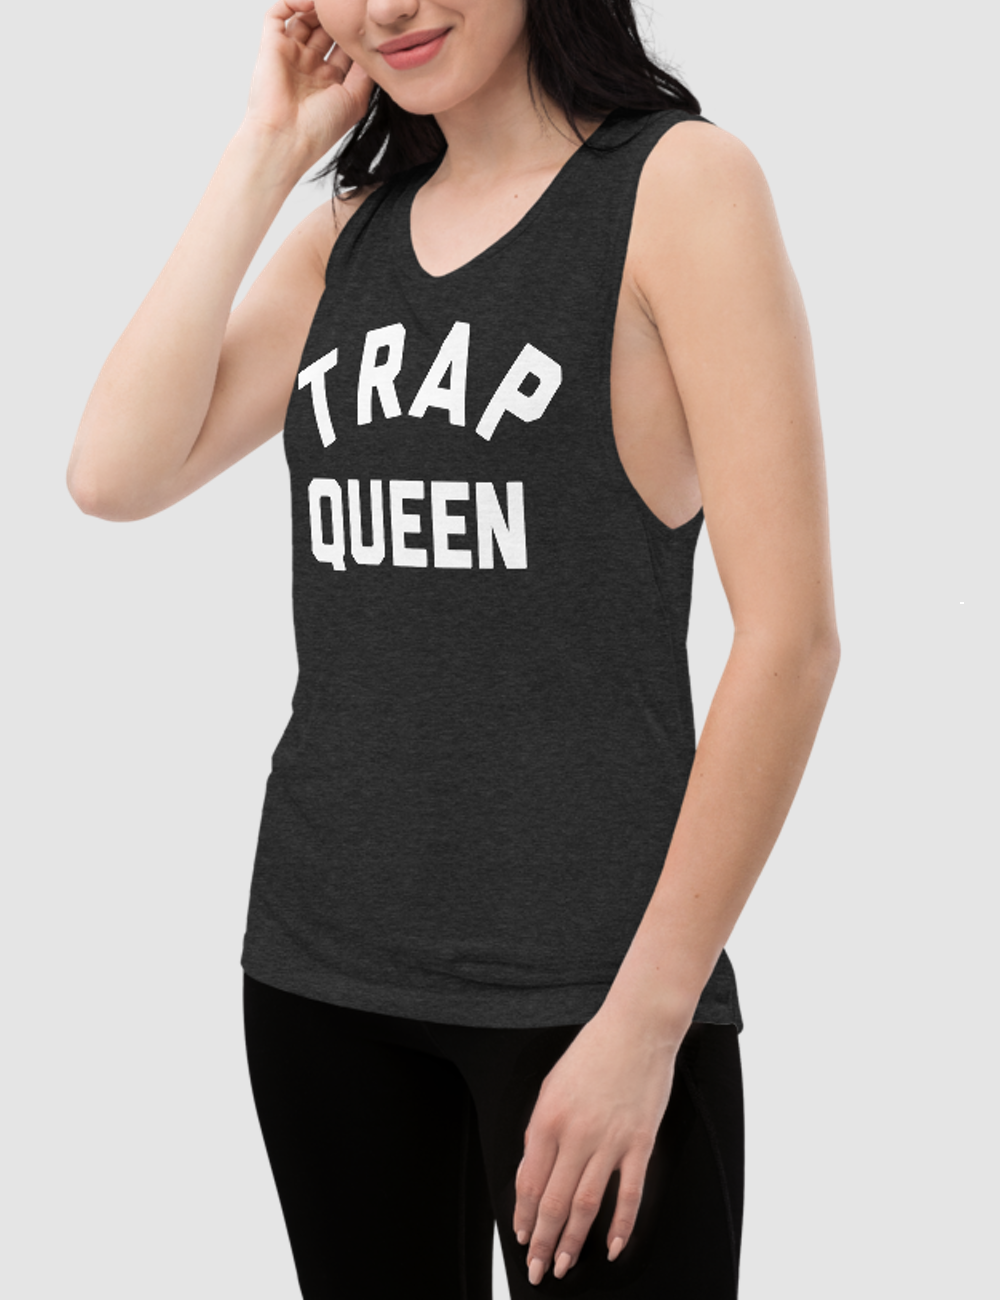 Trap Queen | Women's Muscle Tank Top OniTakai